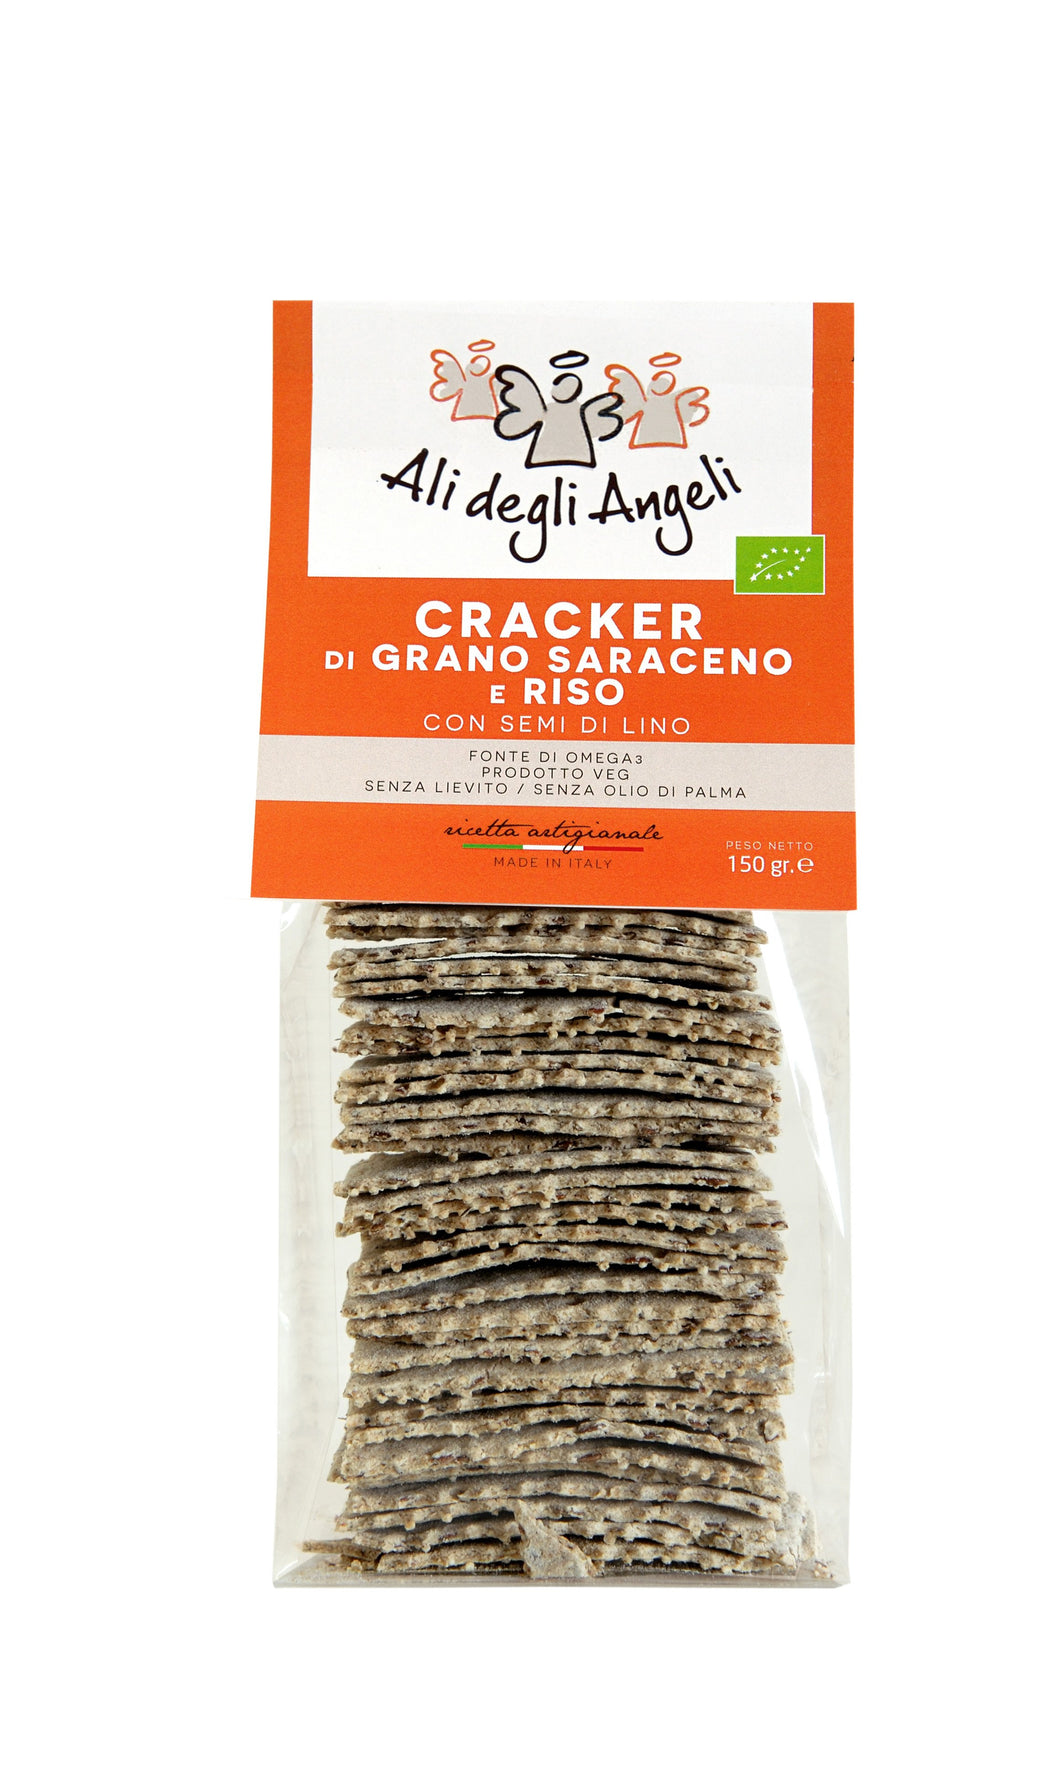 Crackers di Grano Saraceno e Riso con semi di Lino 150g